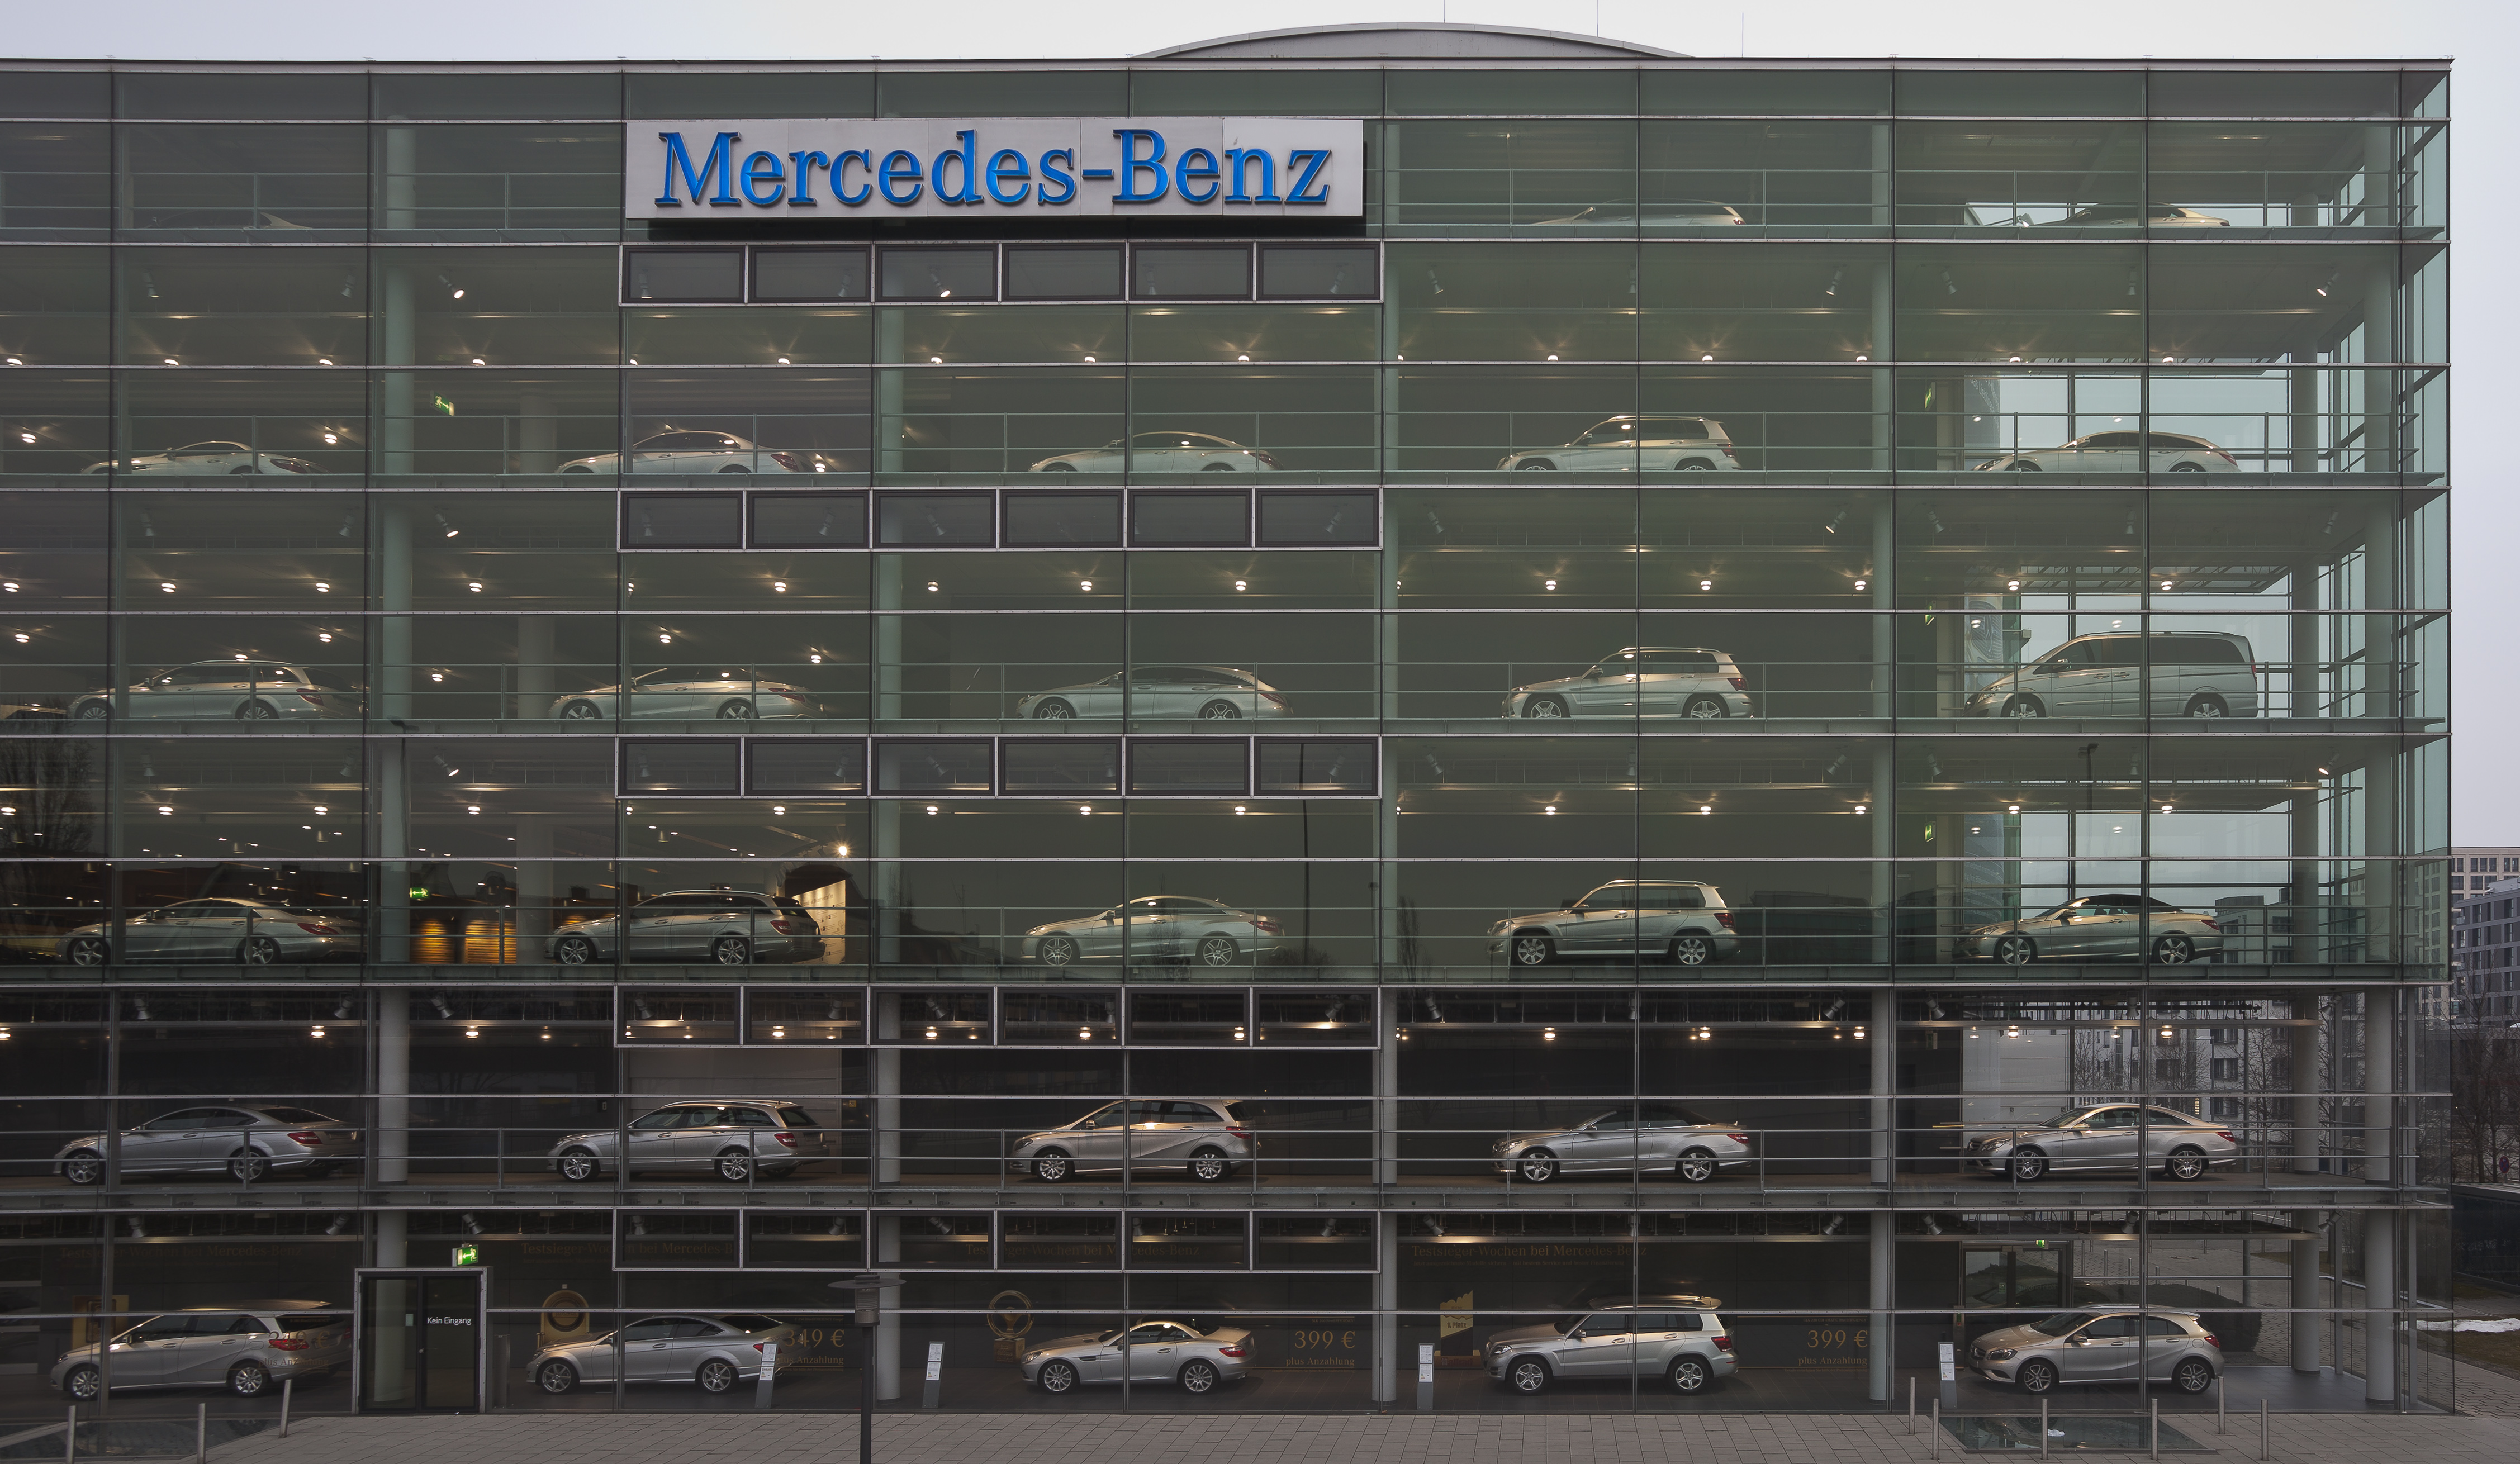 Concesionario de Mercedes-Benz, Múnich, Alemania, 2013-03-30, DD 02